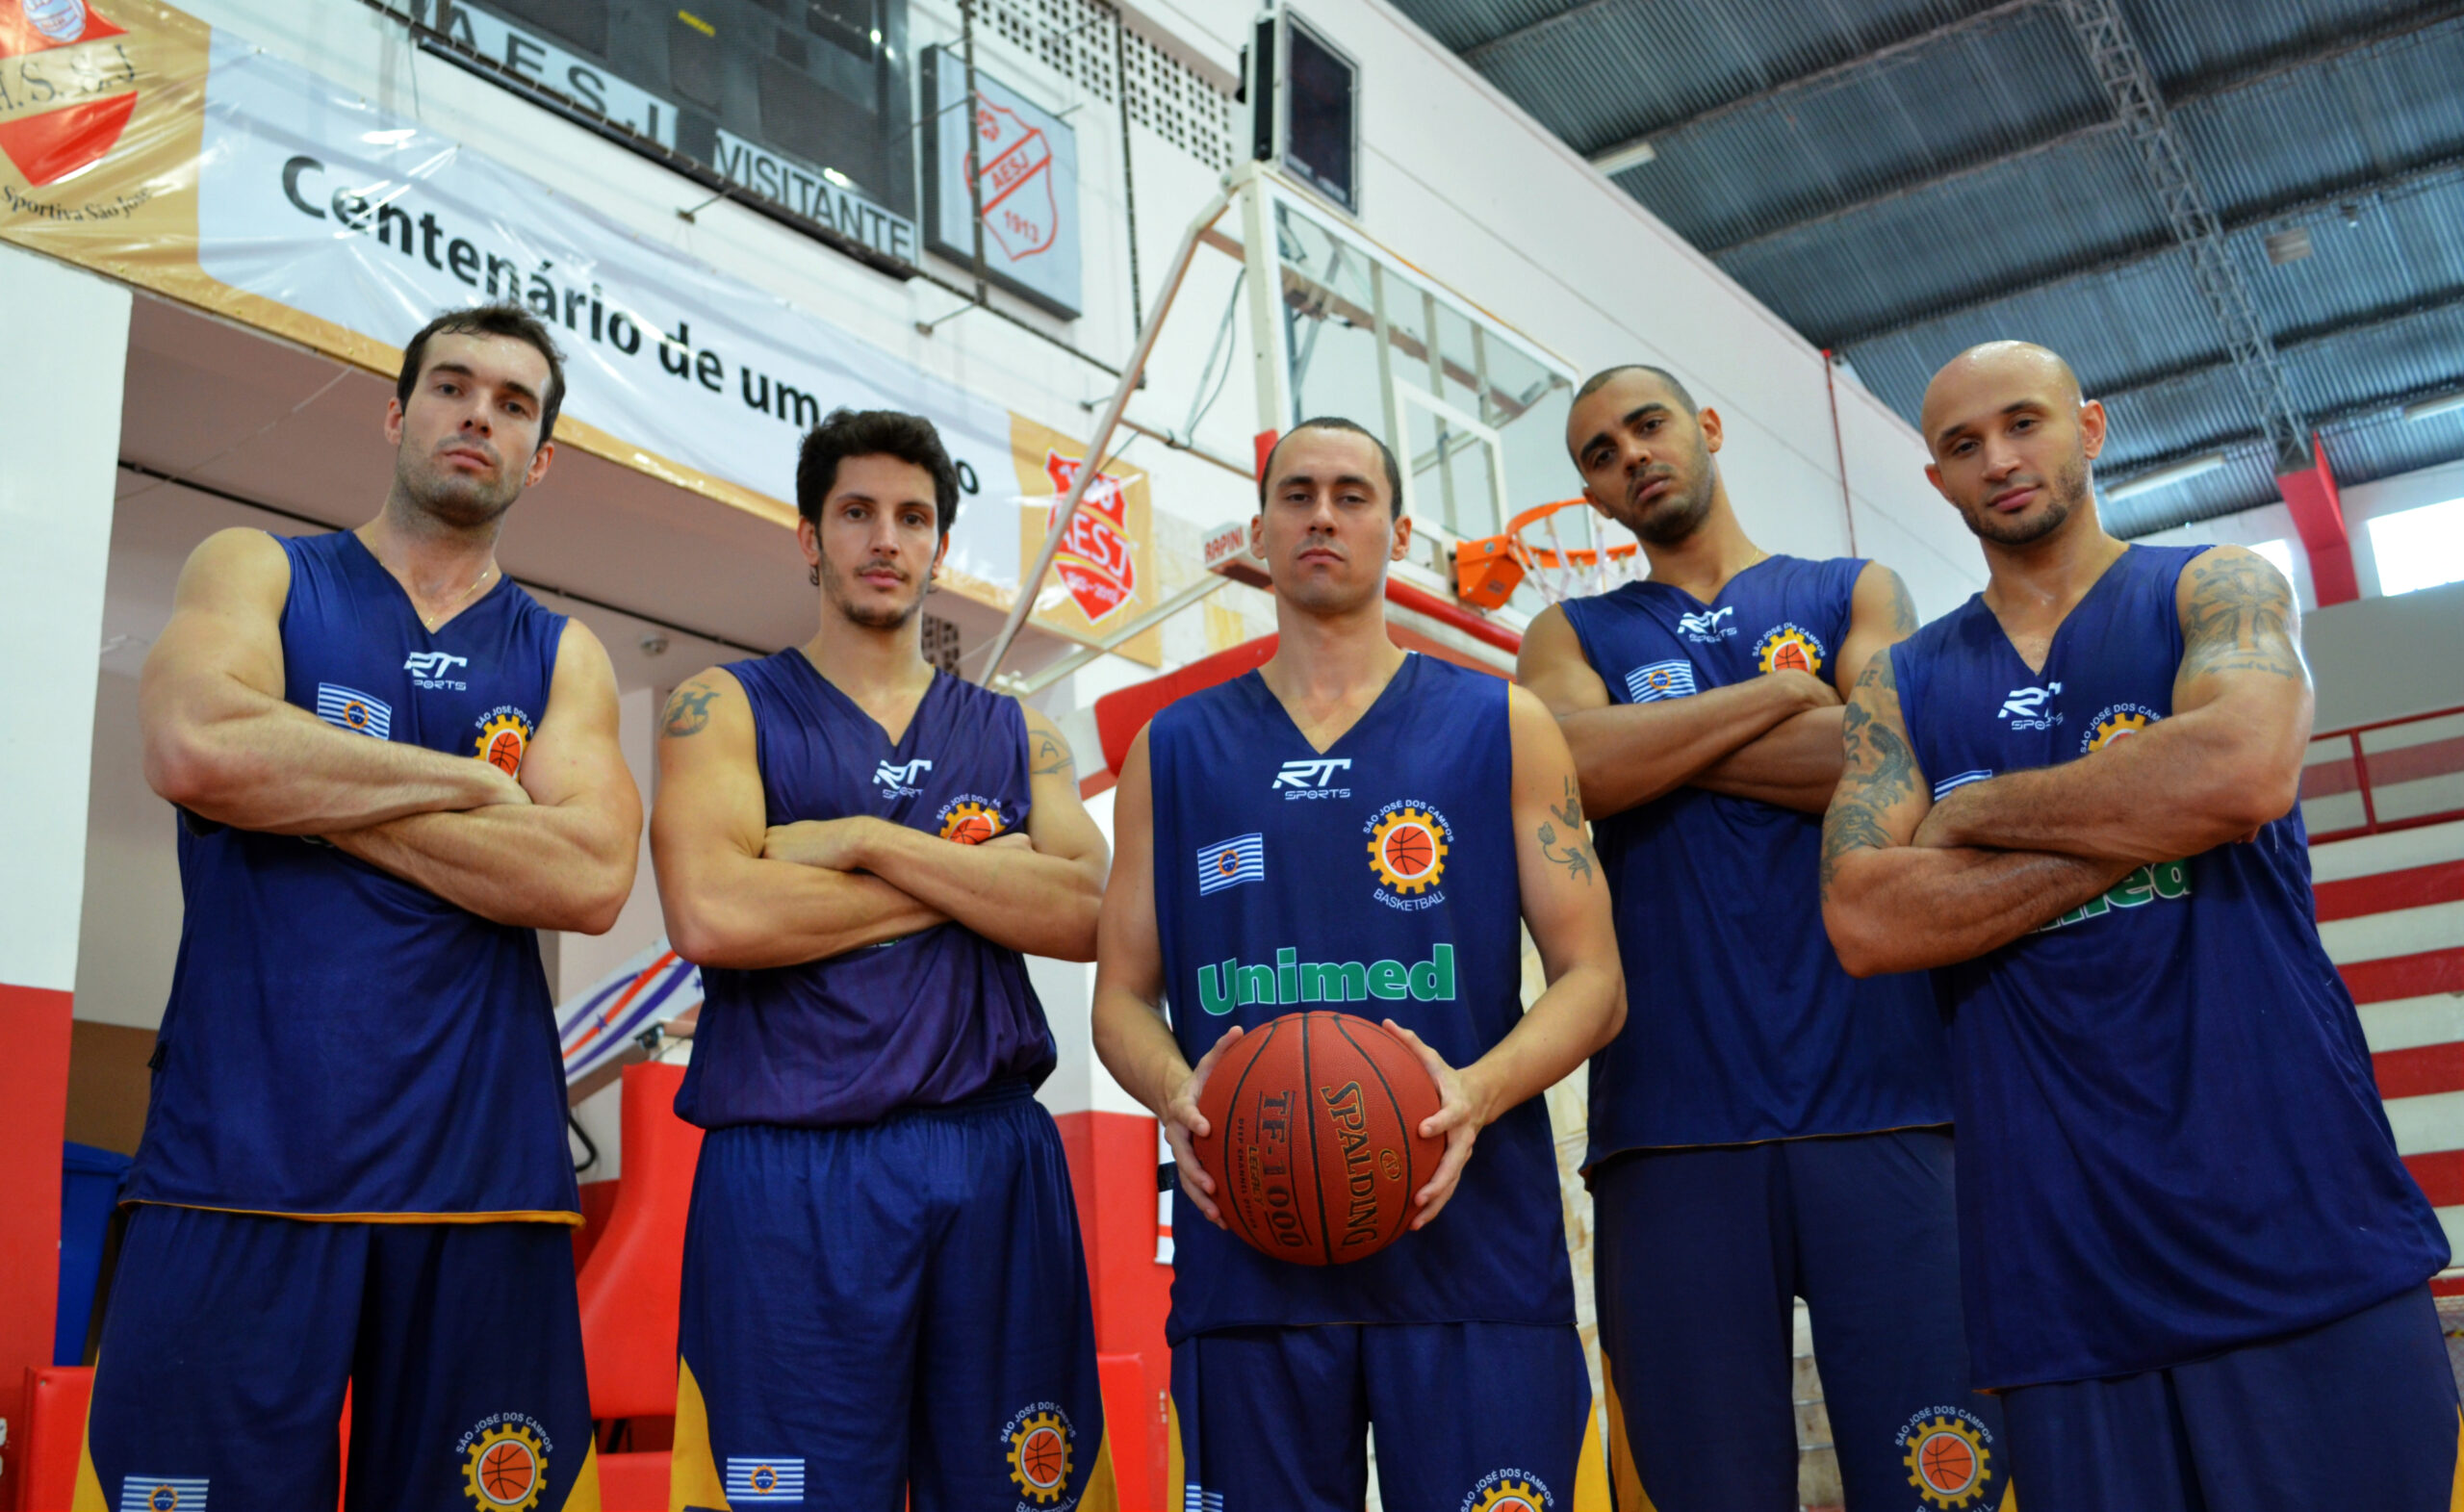 São José Basketball anuncia novo patrocinador para temporada